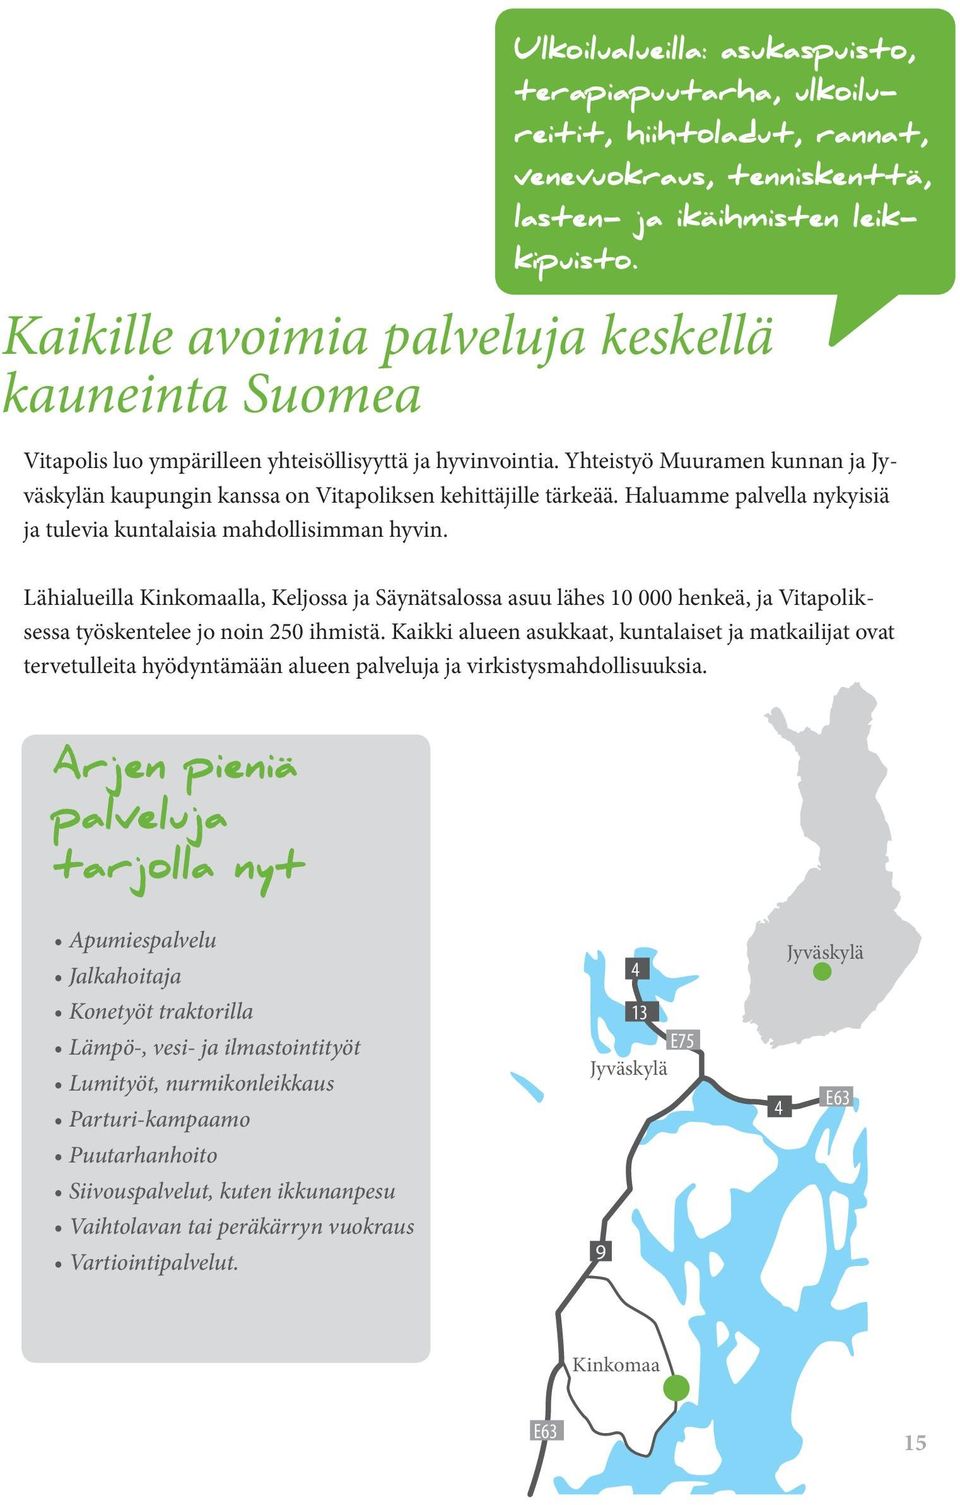 Yhteistyö Muuramen kunnan ja Jyväskylän kaupungin kanssa on Vitapoliksen kehittäjille tärkeää. Haluamme palvella nykyisiä ja tulevia kuntalaisia mahdollisimman hyvin.